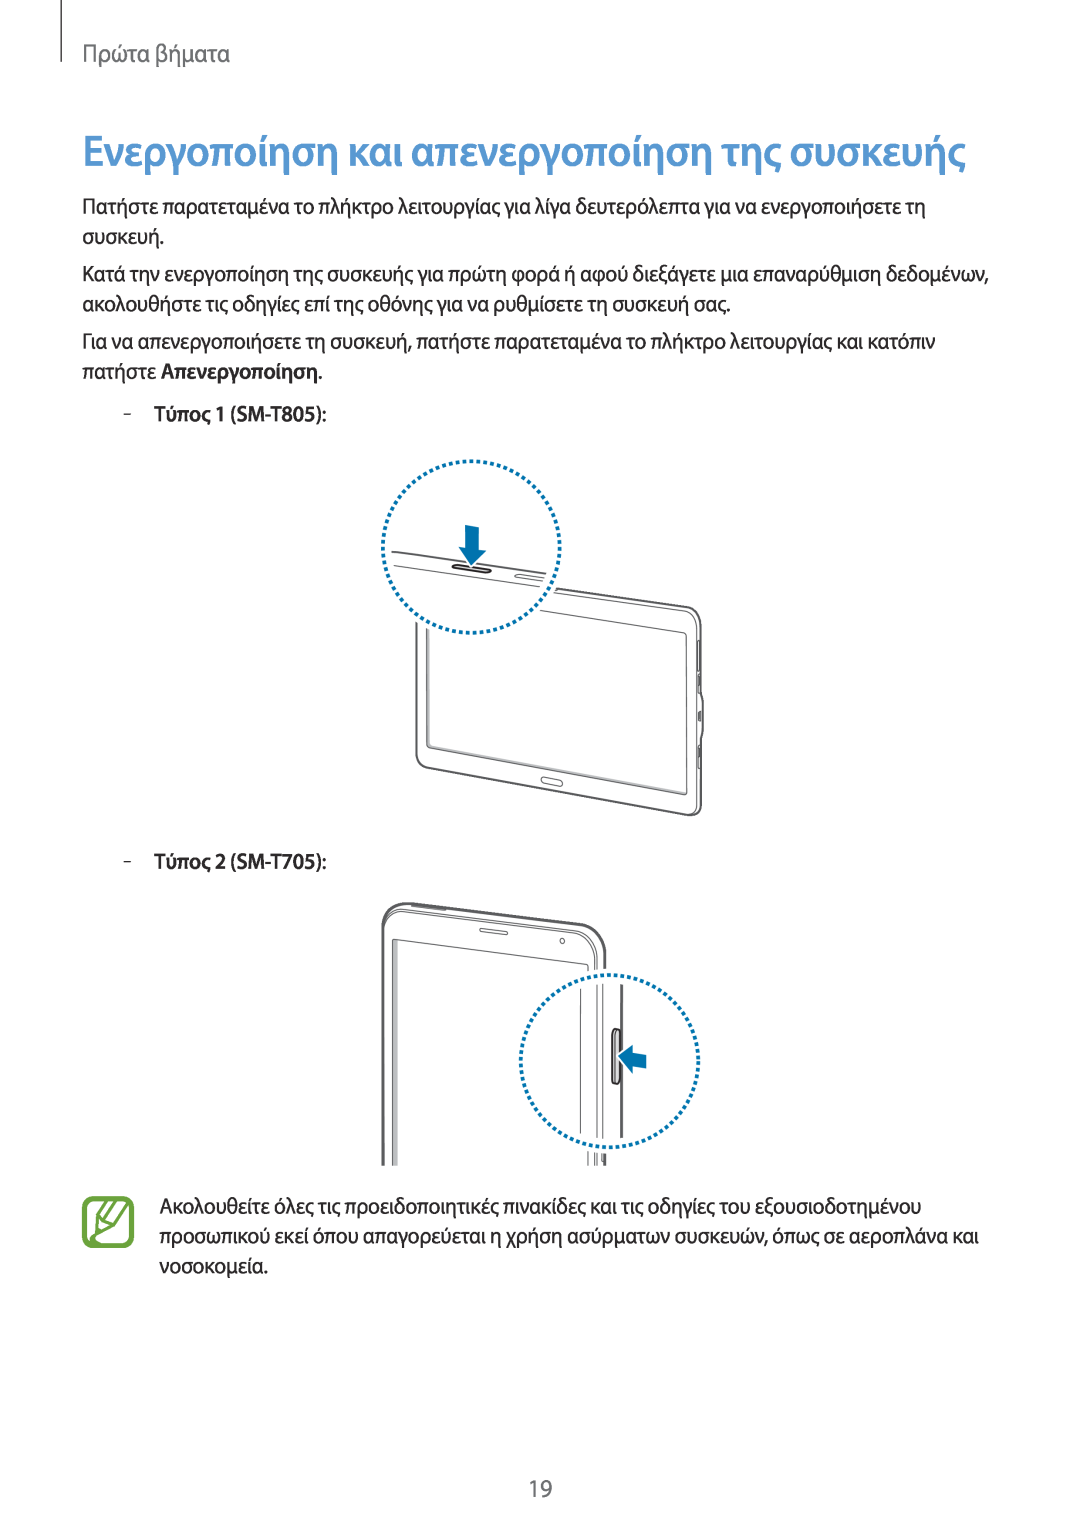 Samsung SM-T705NTSAEUR manual Τύπος 1 SM-T805 Τύπος 2 SM-T705, Ενεργοποίηση και απενεργοποίηση της συσκευής, Πρώτα βήματα 